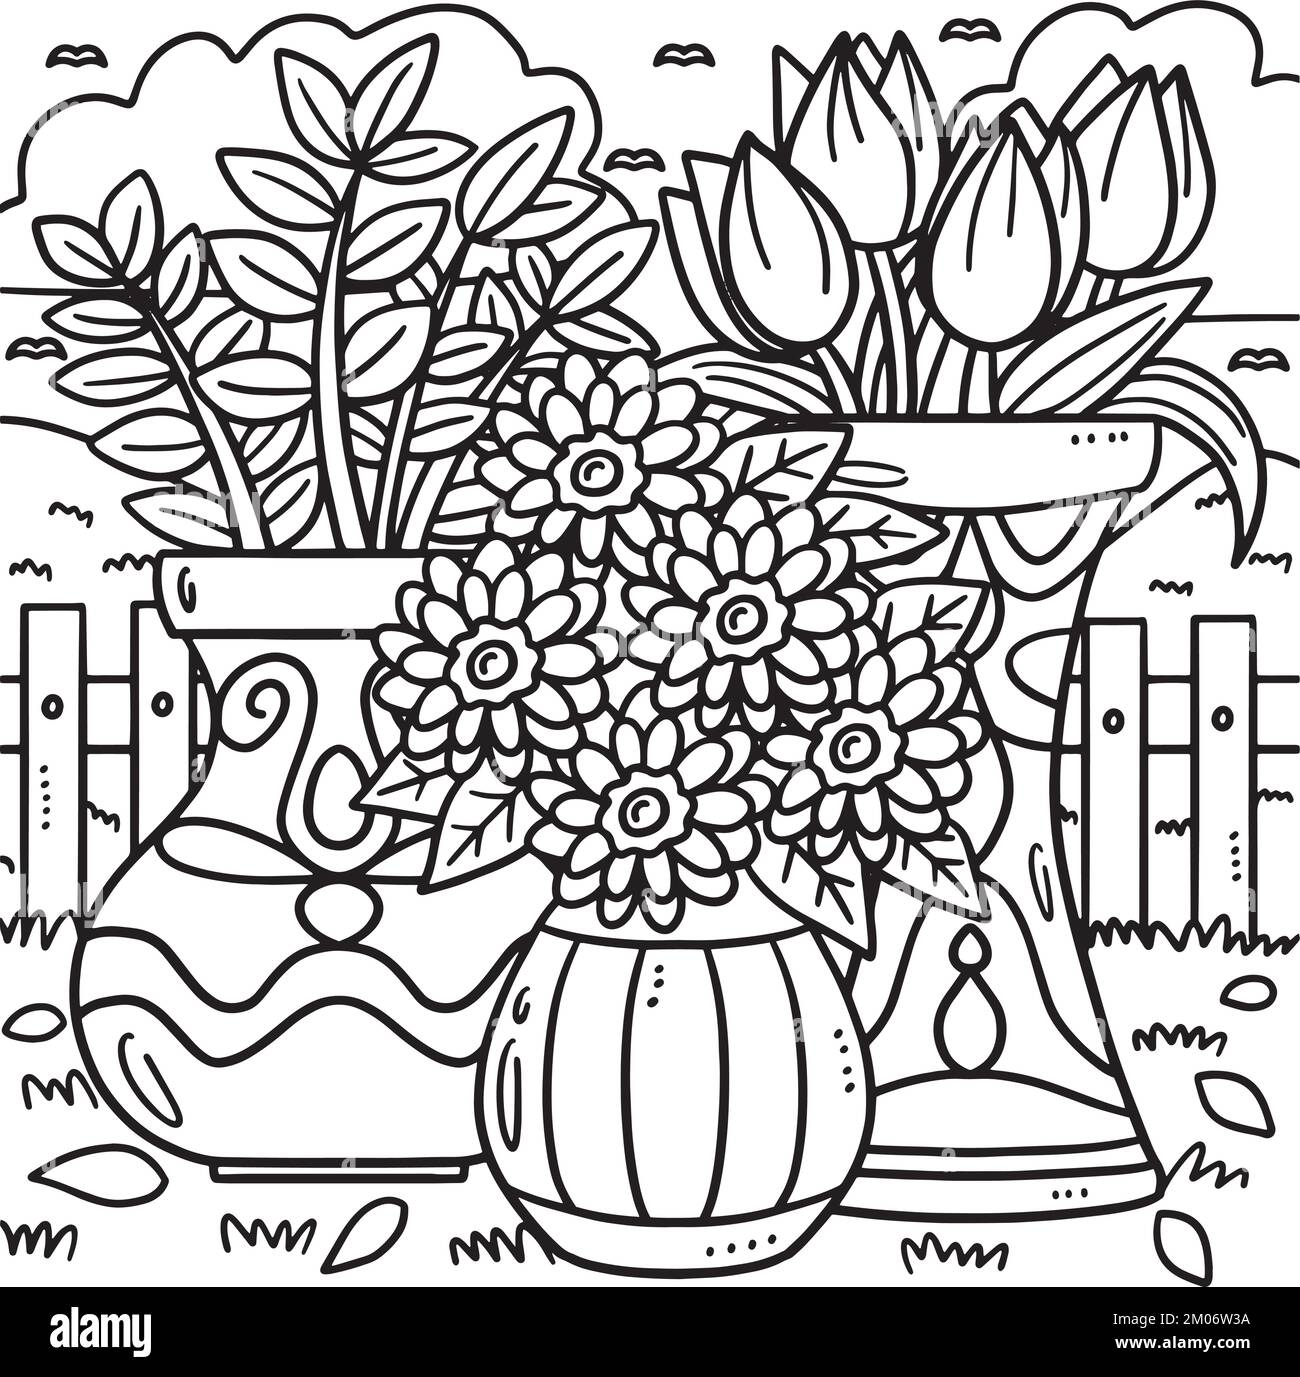 Plantas para colorear Imágenes de stock en blanco y negro - Alamy